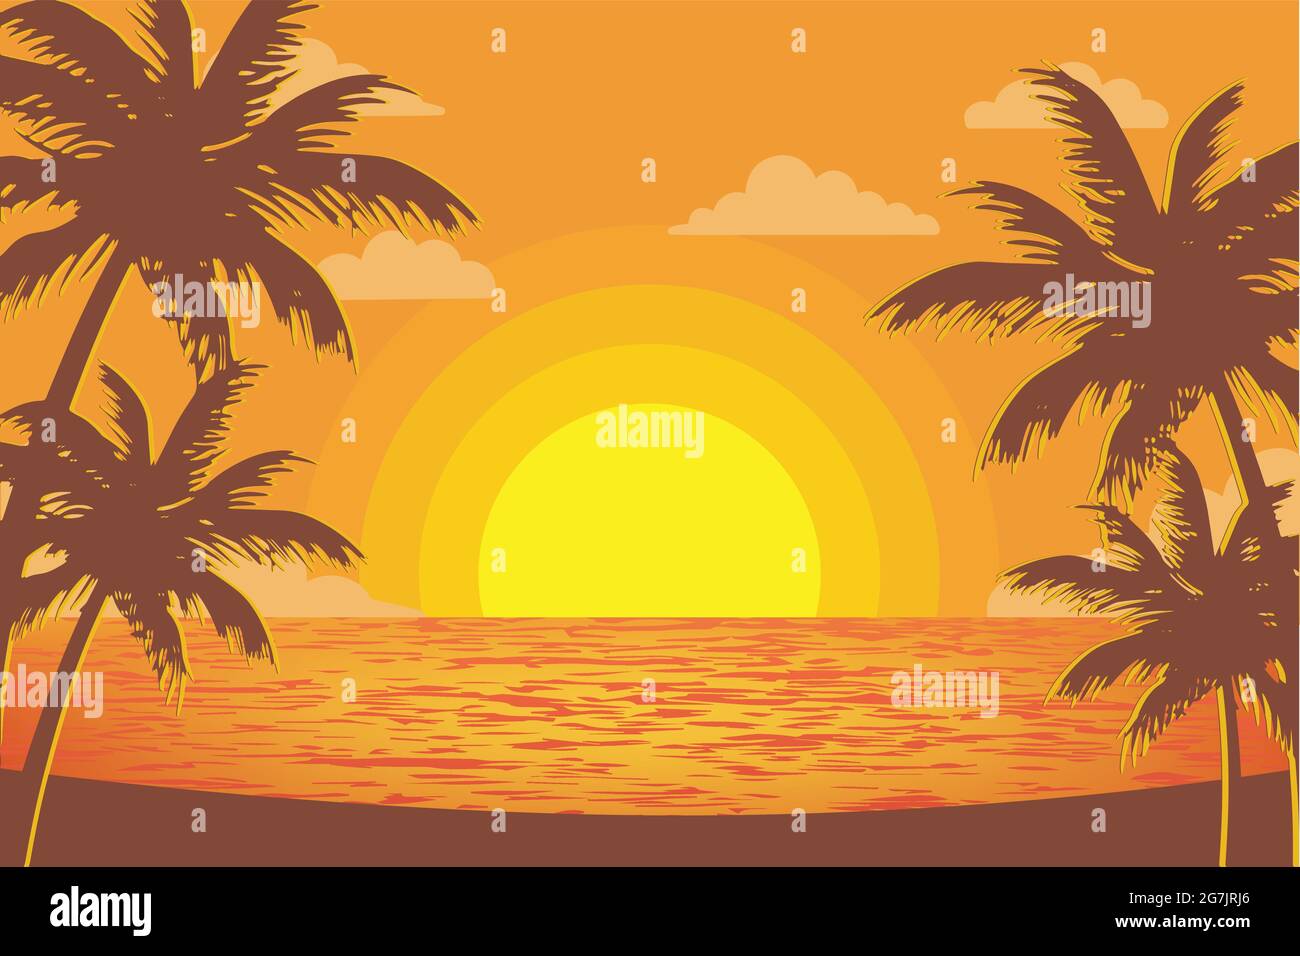 vue sur la plage tropicale au crépuscule, silhouette de palmier et coucher de soleil Illustration de Vecteur